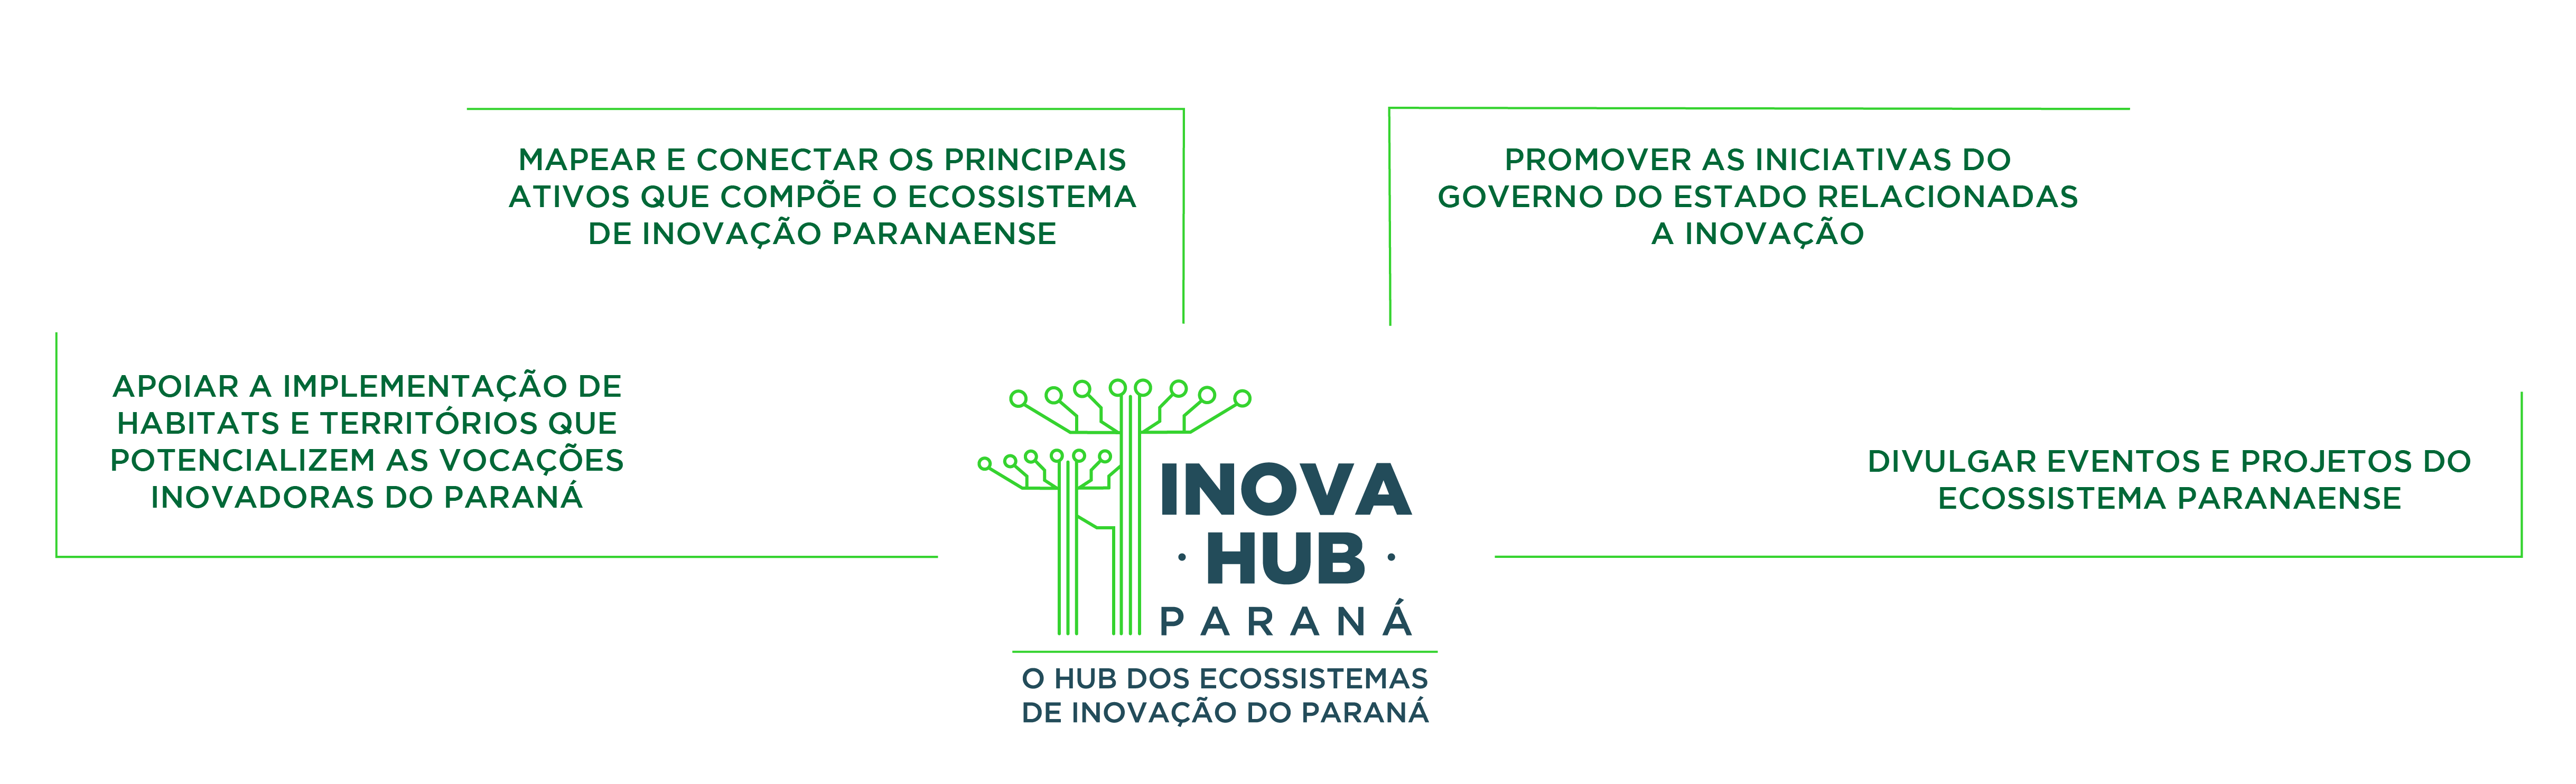 Promover as iniciativas do governo do estado relacionadas a inovação;  Mapear e conectar os principais ativos que compõe o ecossistema de inovação paranaense; Apoiar a implementação de habitats e territórios que potencializem as vocações inovadoras do Paraná; Divulgar eventos e projetos do ecossistema paranaense.